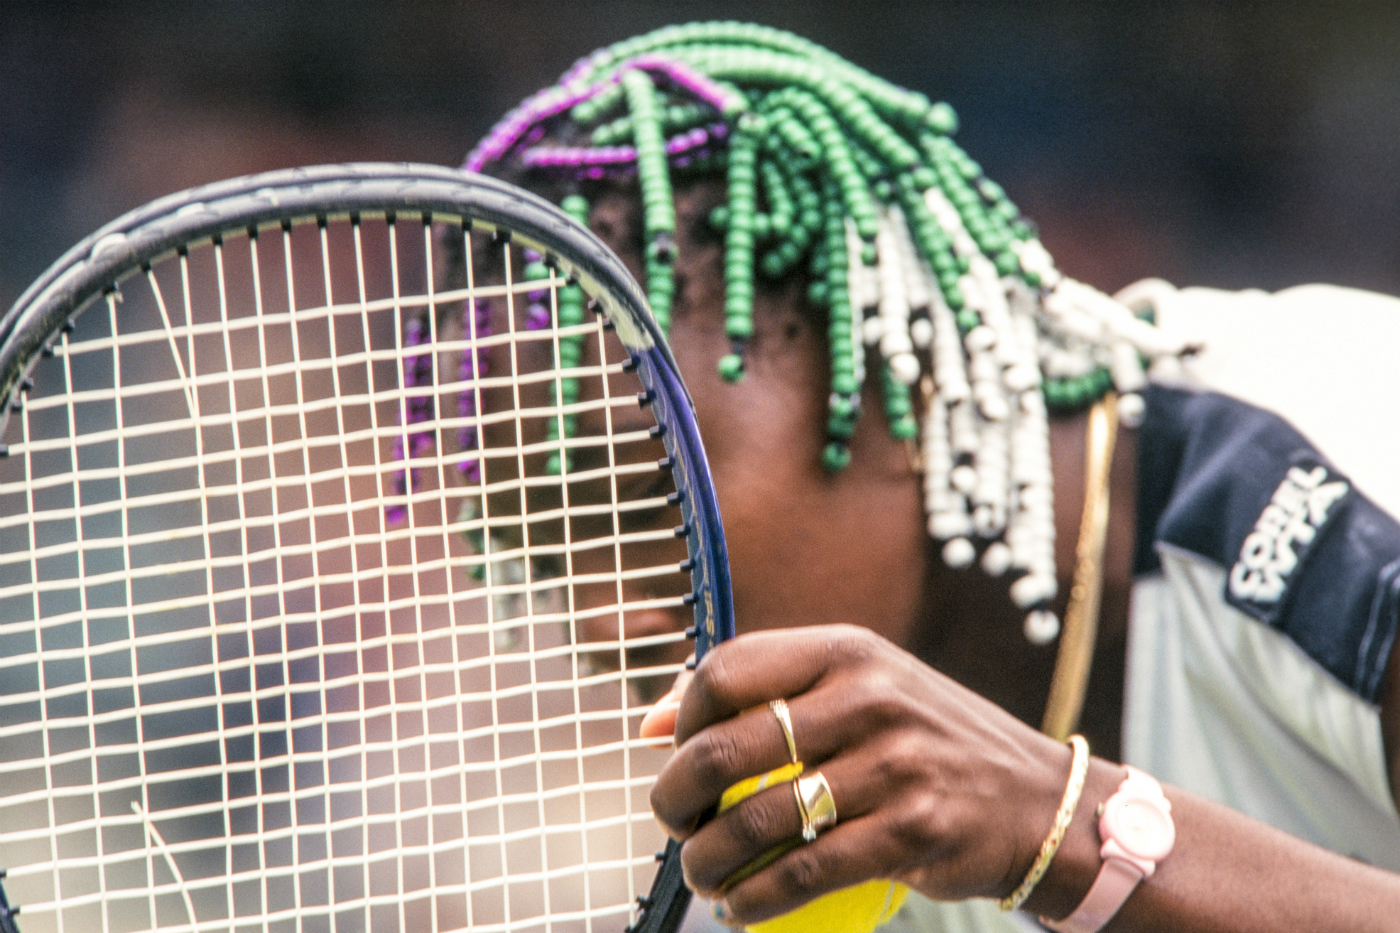 Venus Williams ha vinto cinque volte il torneo: 2000, 2001, 2005, 2007 e 2008.